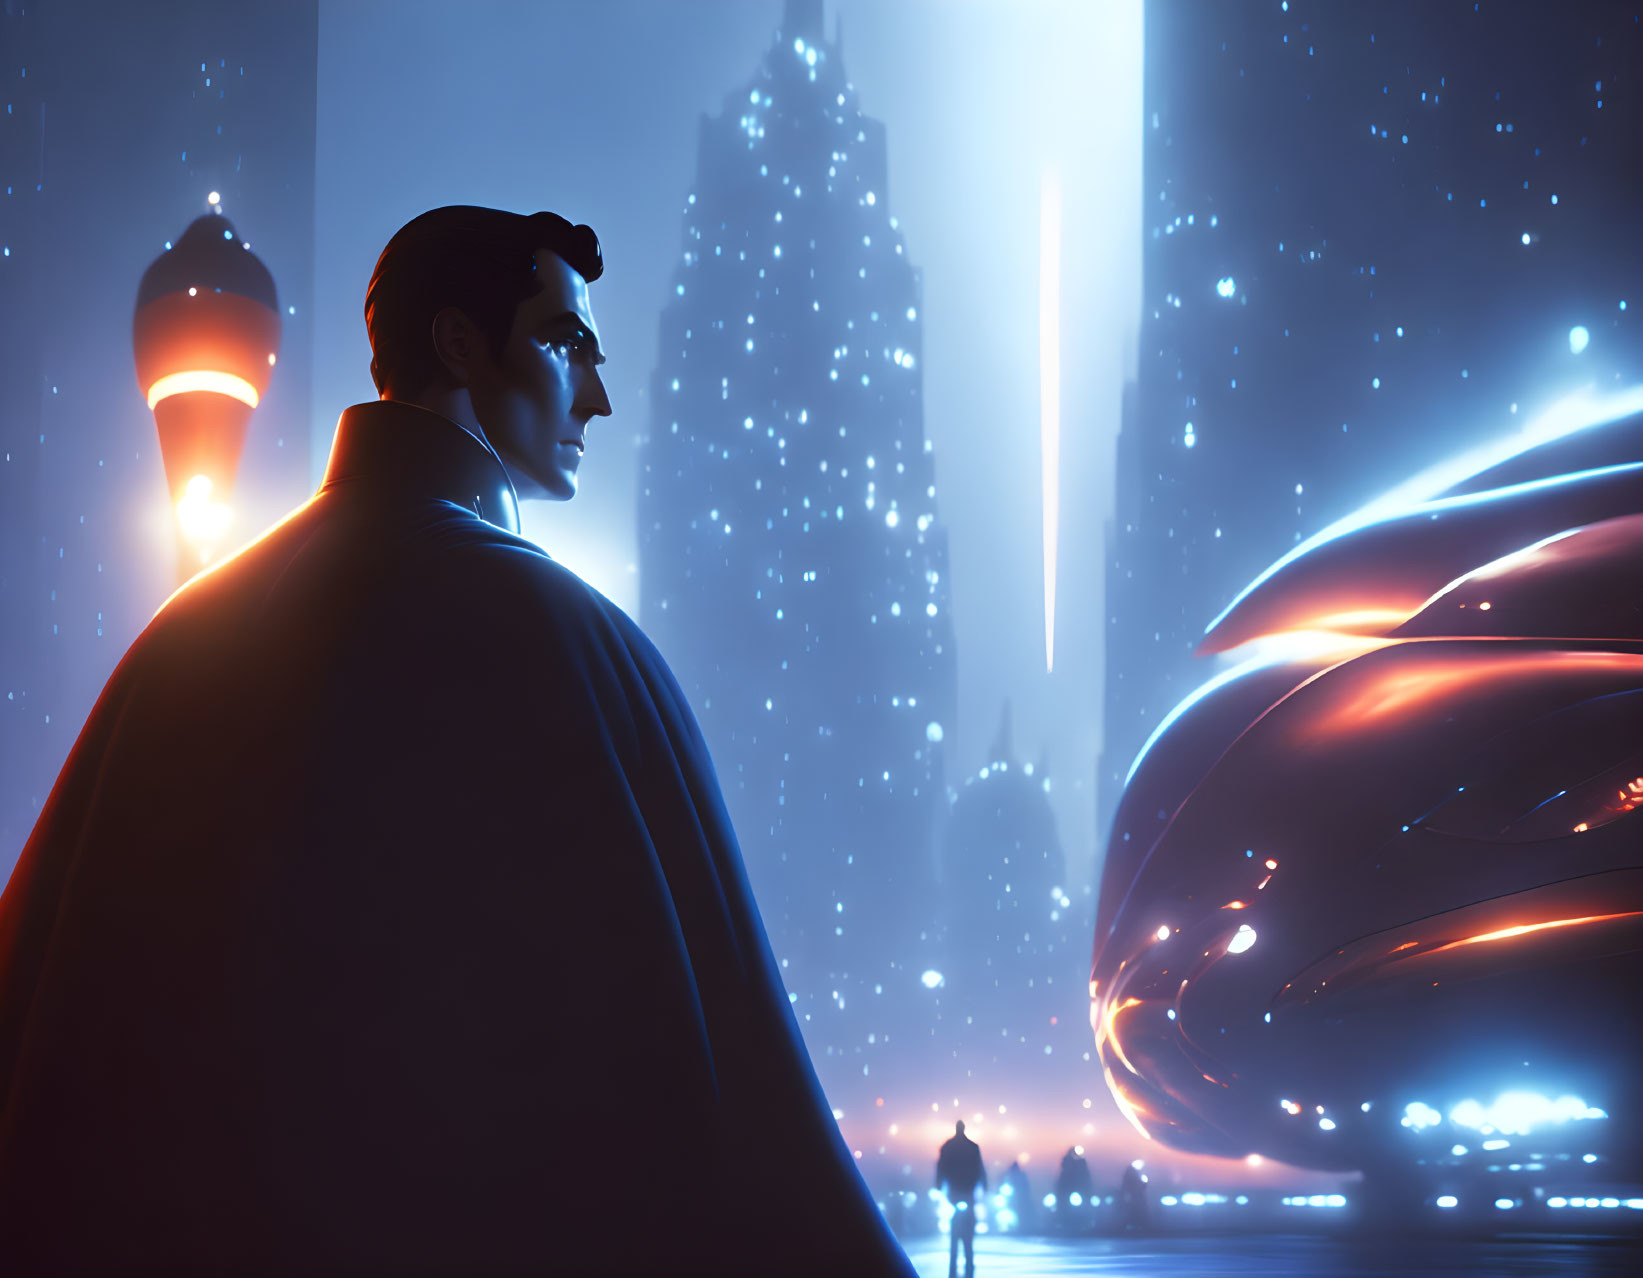 Superhero illustration overlooking futuristic cityscape at night